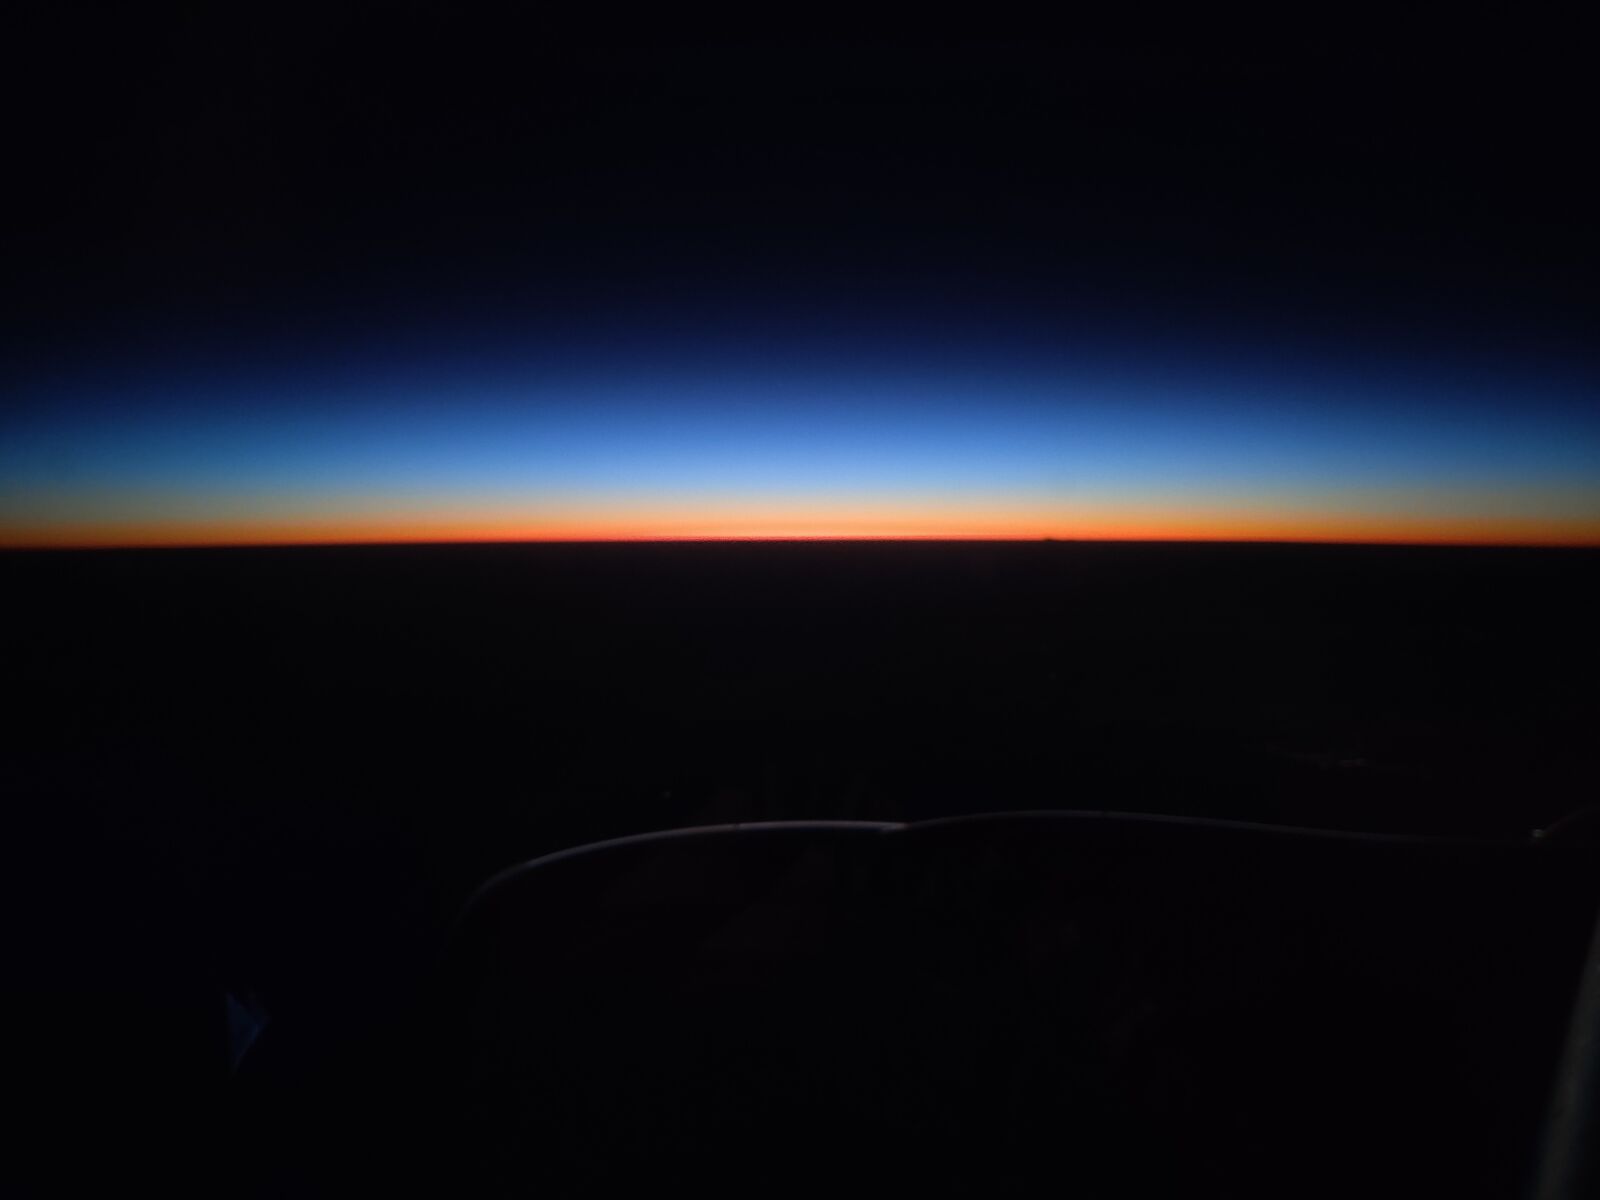 OnePlus 7 PRO sample photo. Horizon, sunrise, skyline photography